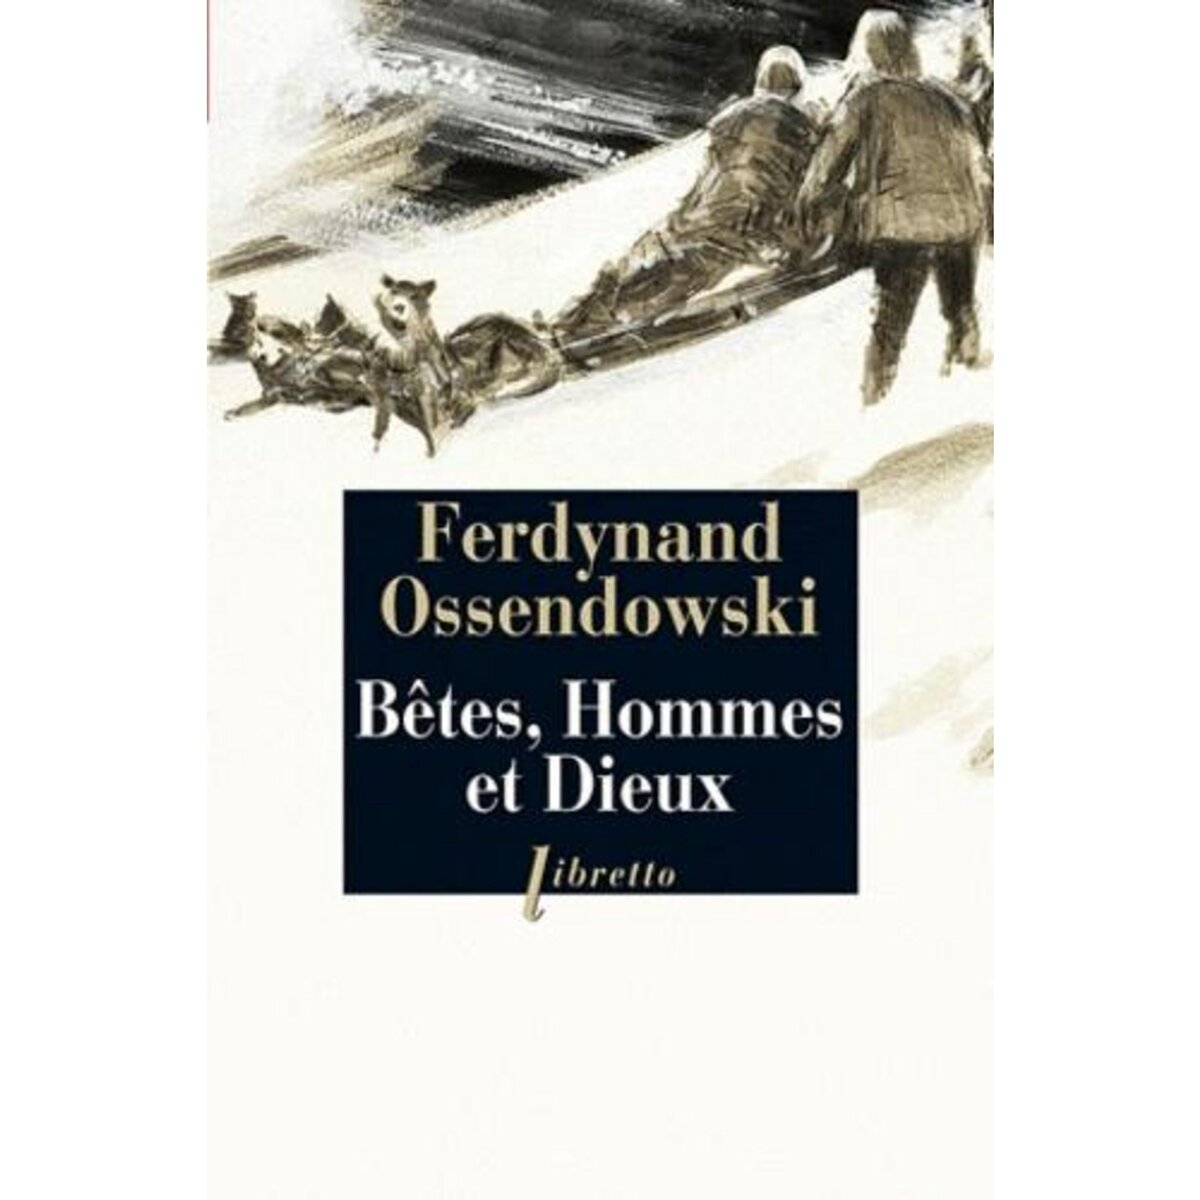  BETES, HOMMES ET DIEUX. A TRAVERS LA MONGOLIE INTERDITE (1920-1921), Ossendowski Ferdynand